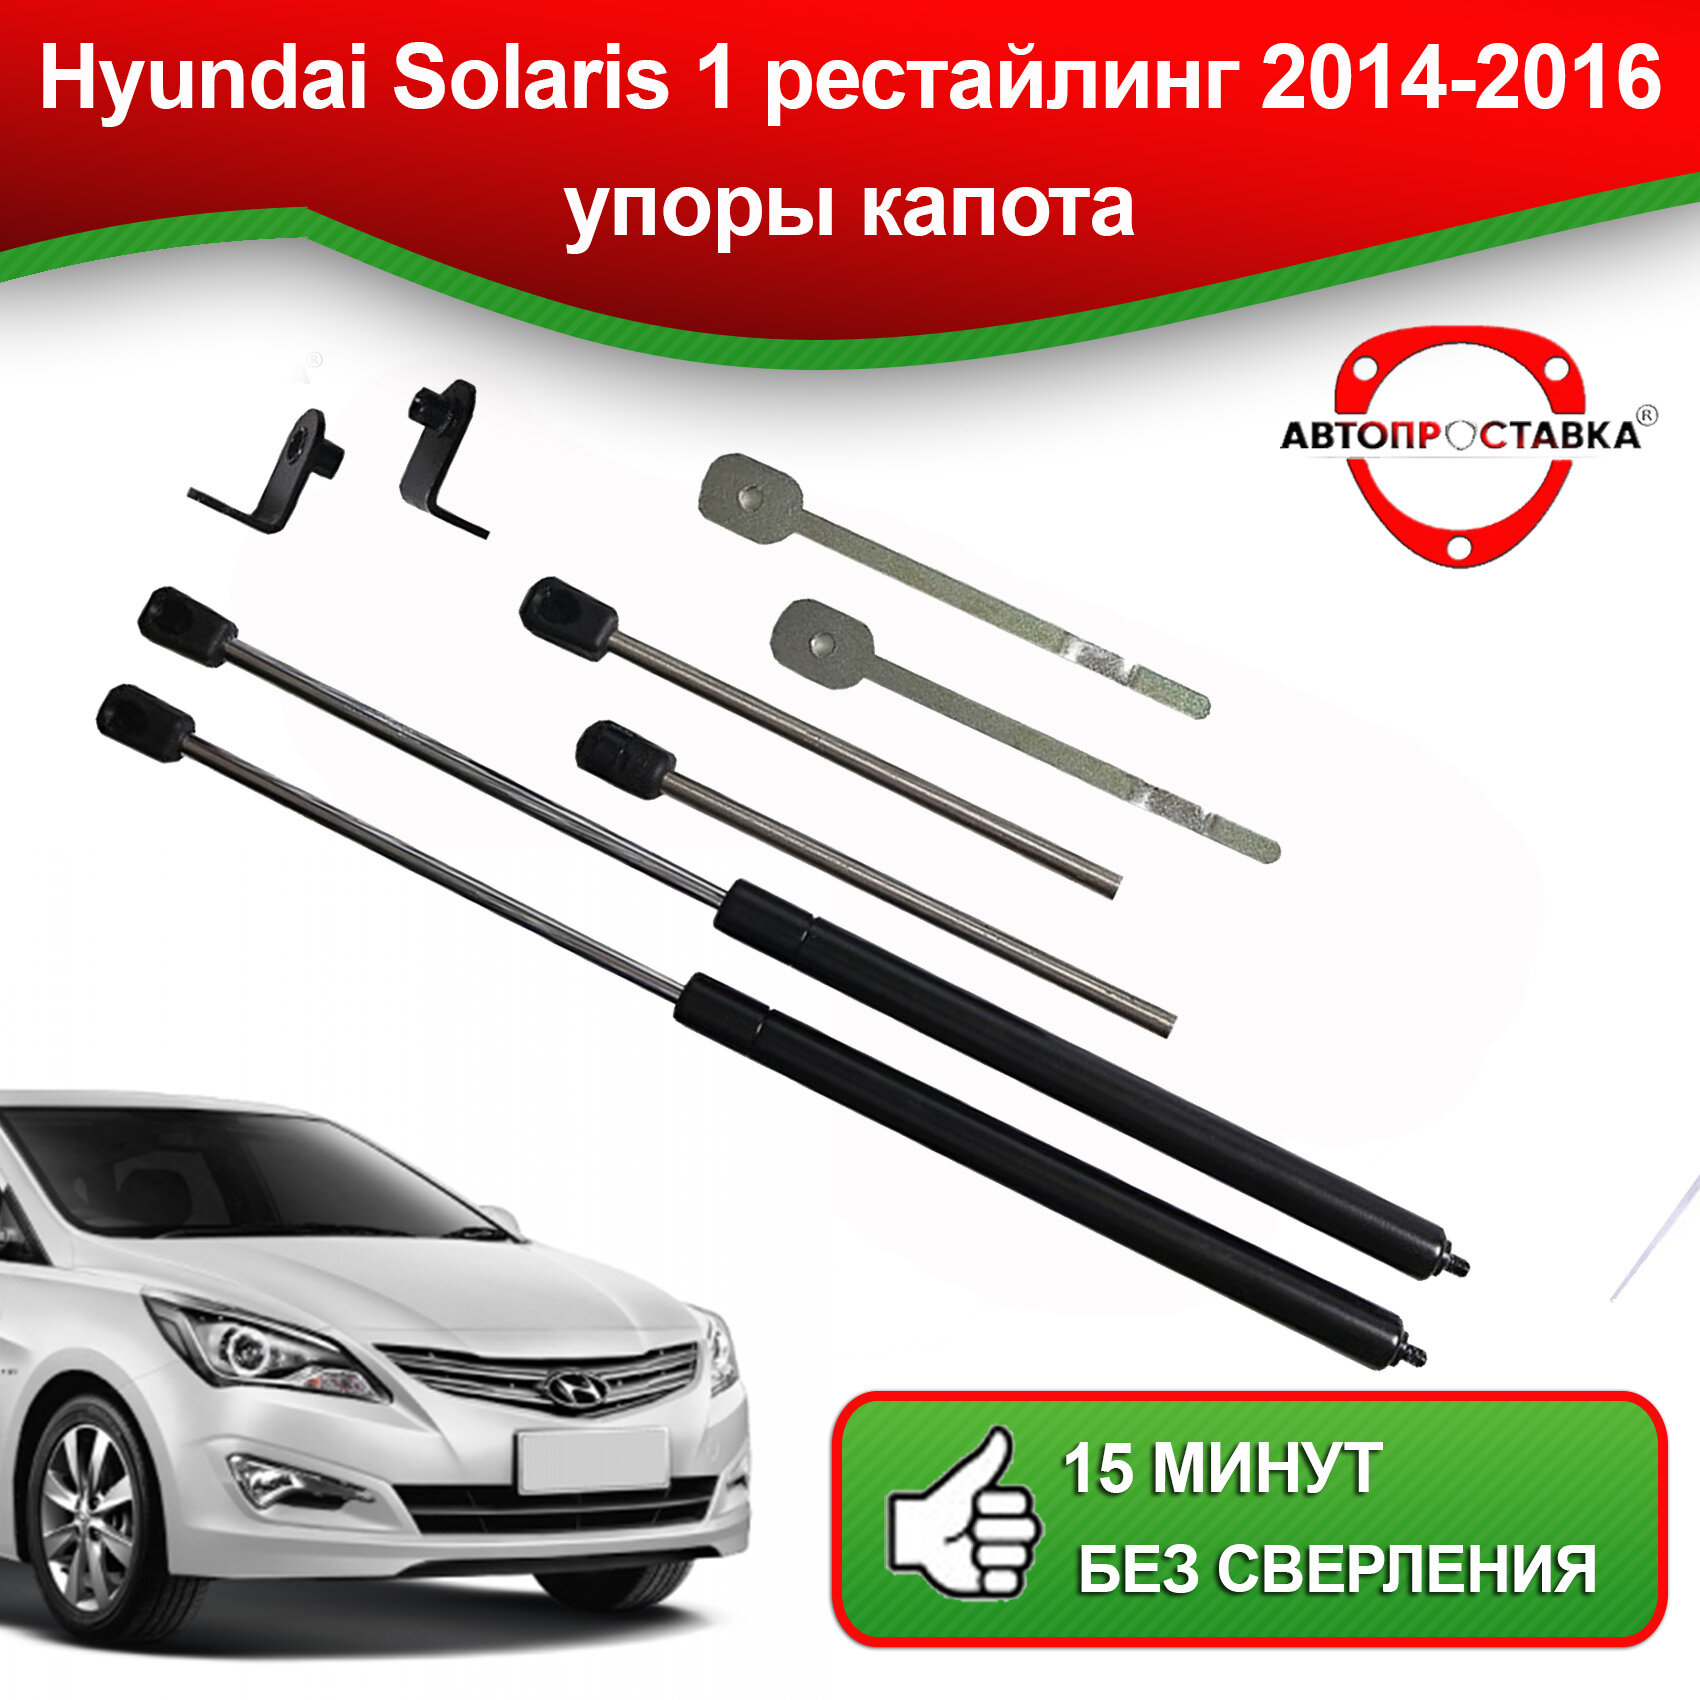 Упоры капота для Hyundai Solaris 1 2011-2014 / Газовые амортизаторы капота Хендай Солярис 1